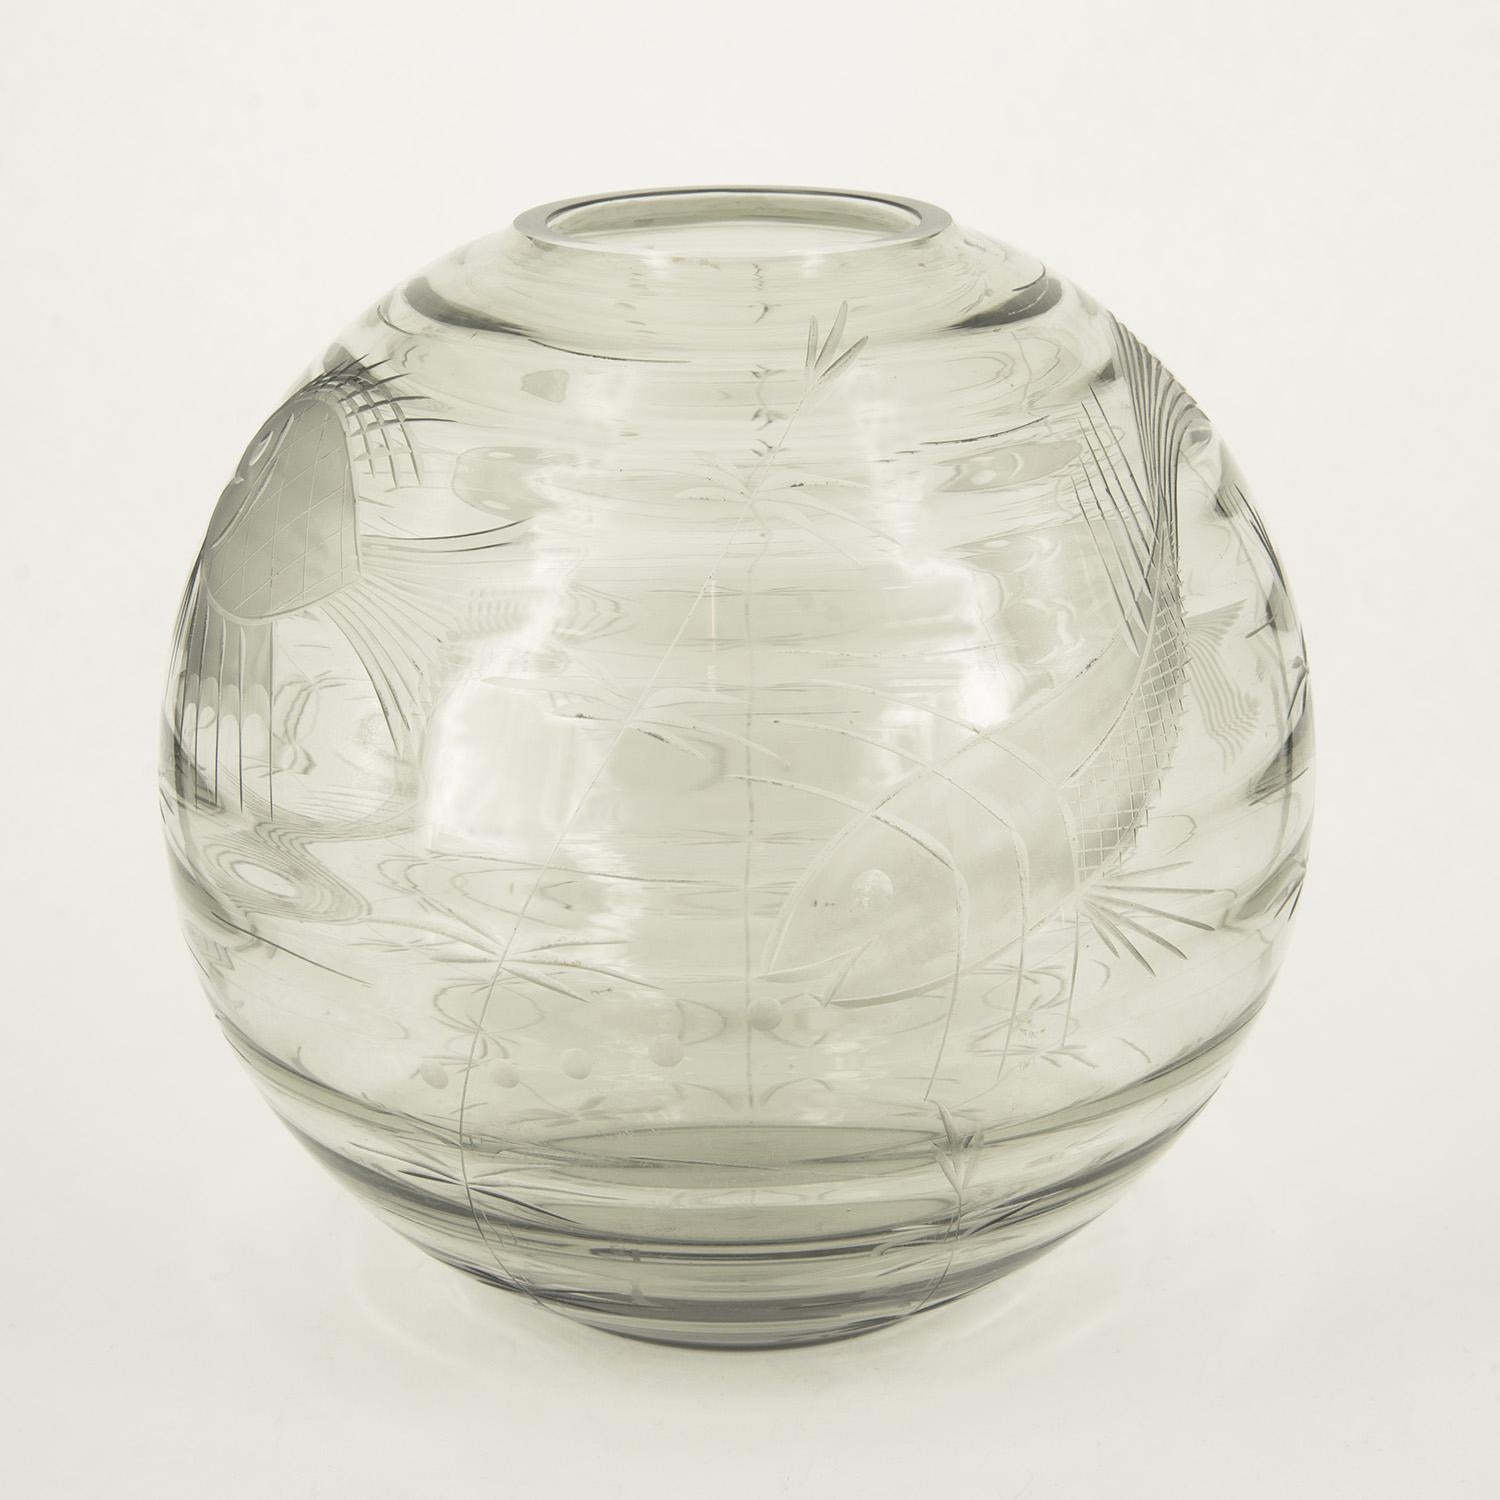 Inusuale vaso in vetro di Murano incolore inciso con motivi marini, la forma sferica richiama la boule per i pesci rossi. La riche décoration a été réalisée à partir d'incisions pratiquées sur la mola et s'inscrit dans le cadre de la production de